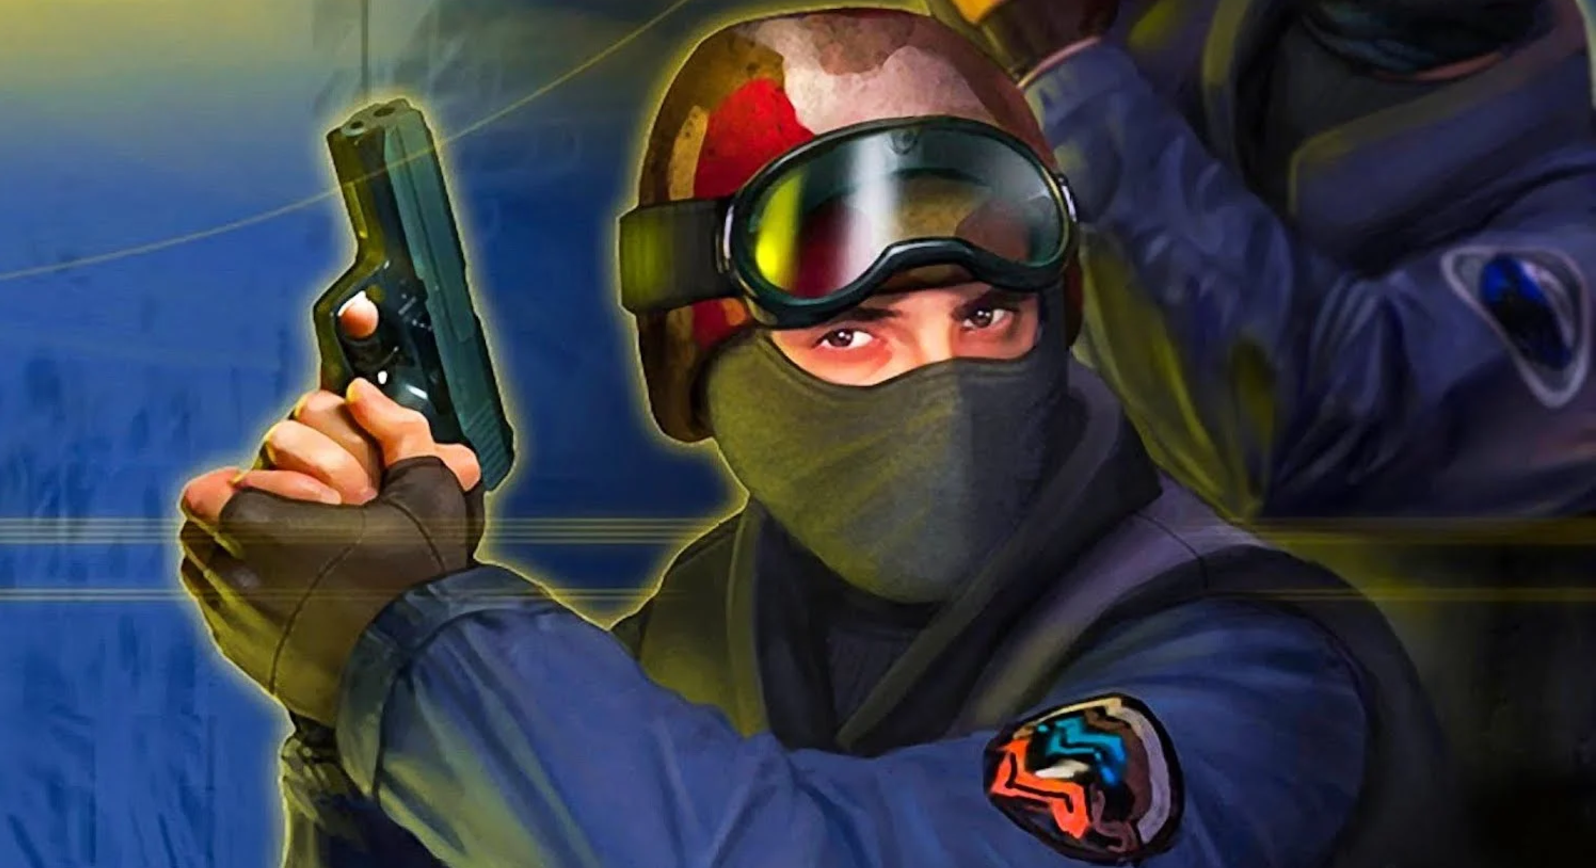 Counter-Strike 2 finalmente chega ao Steam, e é de graça!